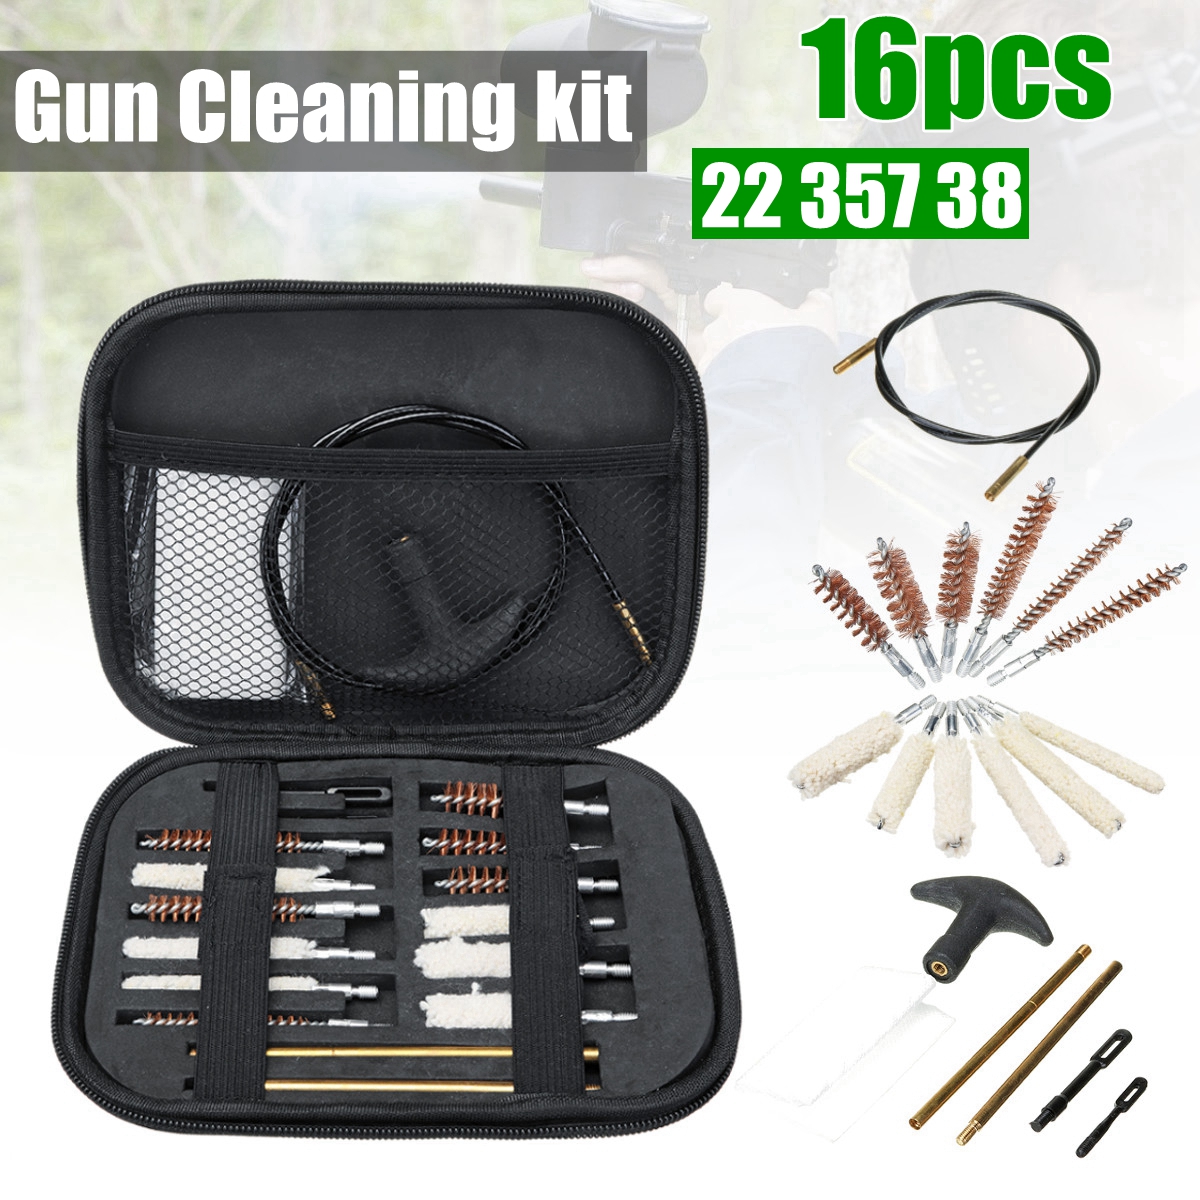 Universal Gun Cleaning Kit For Rifle Pistol Handgun Shotgun Professional Gun